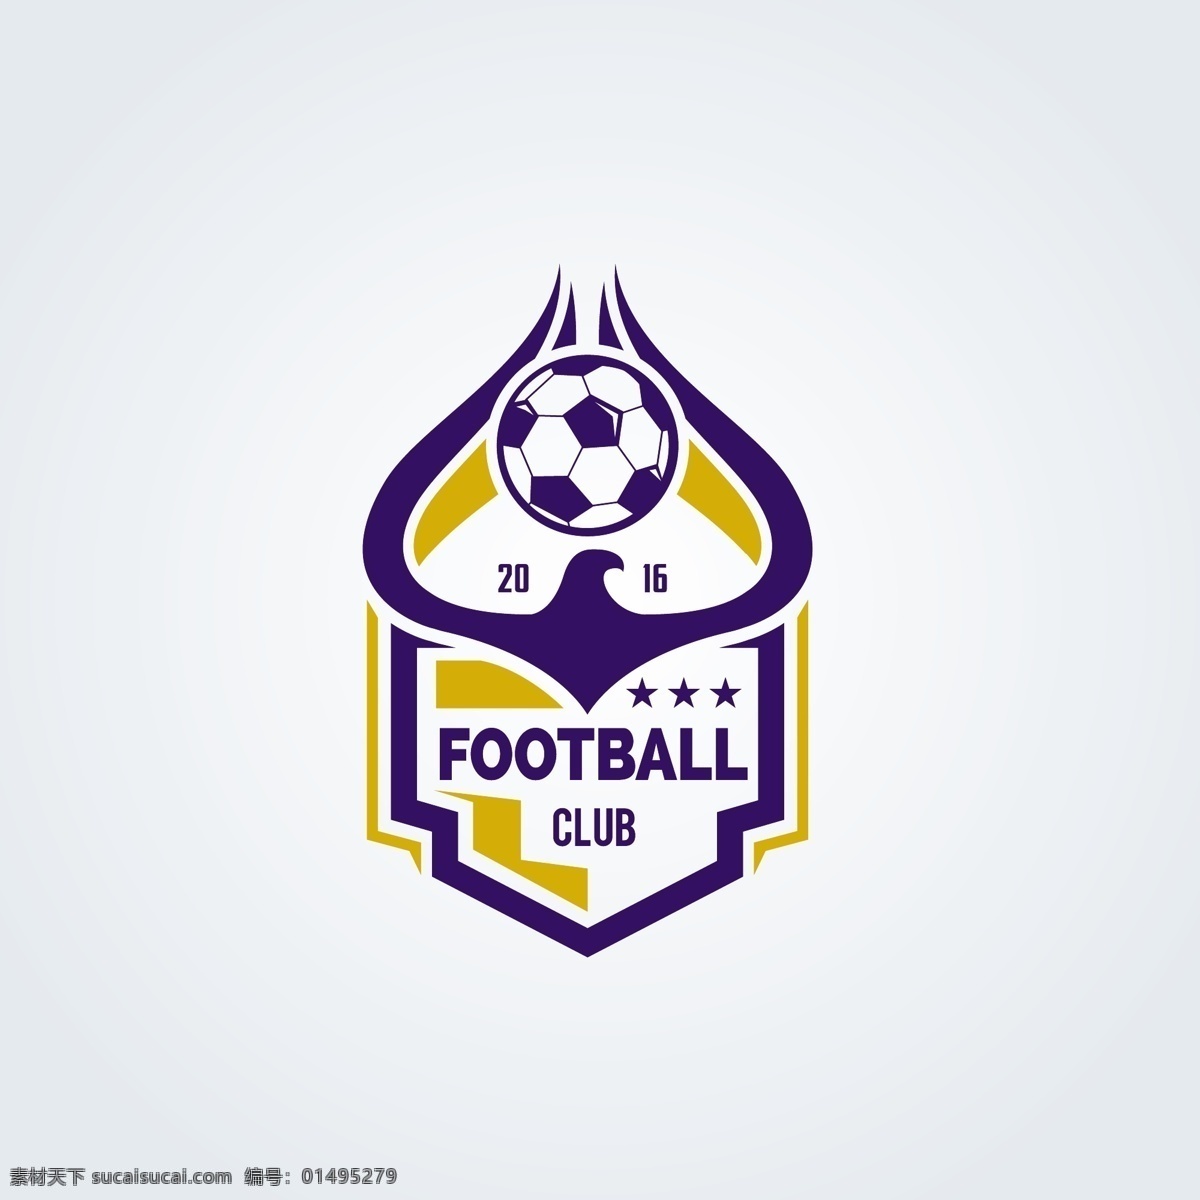 时尚 足球 球队 图标 矢量 个性 炫彩 标志 图形 logo 创意 标志设计 商标设计 企业 公司 白色